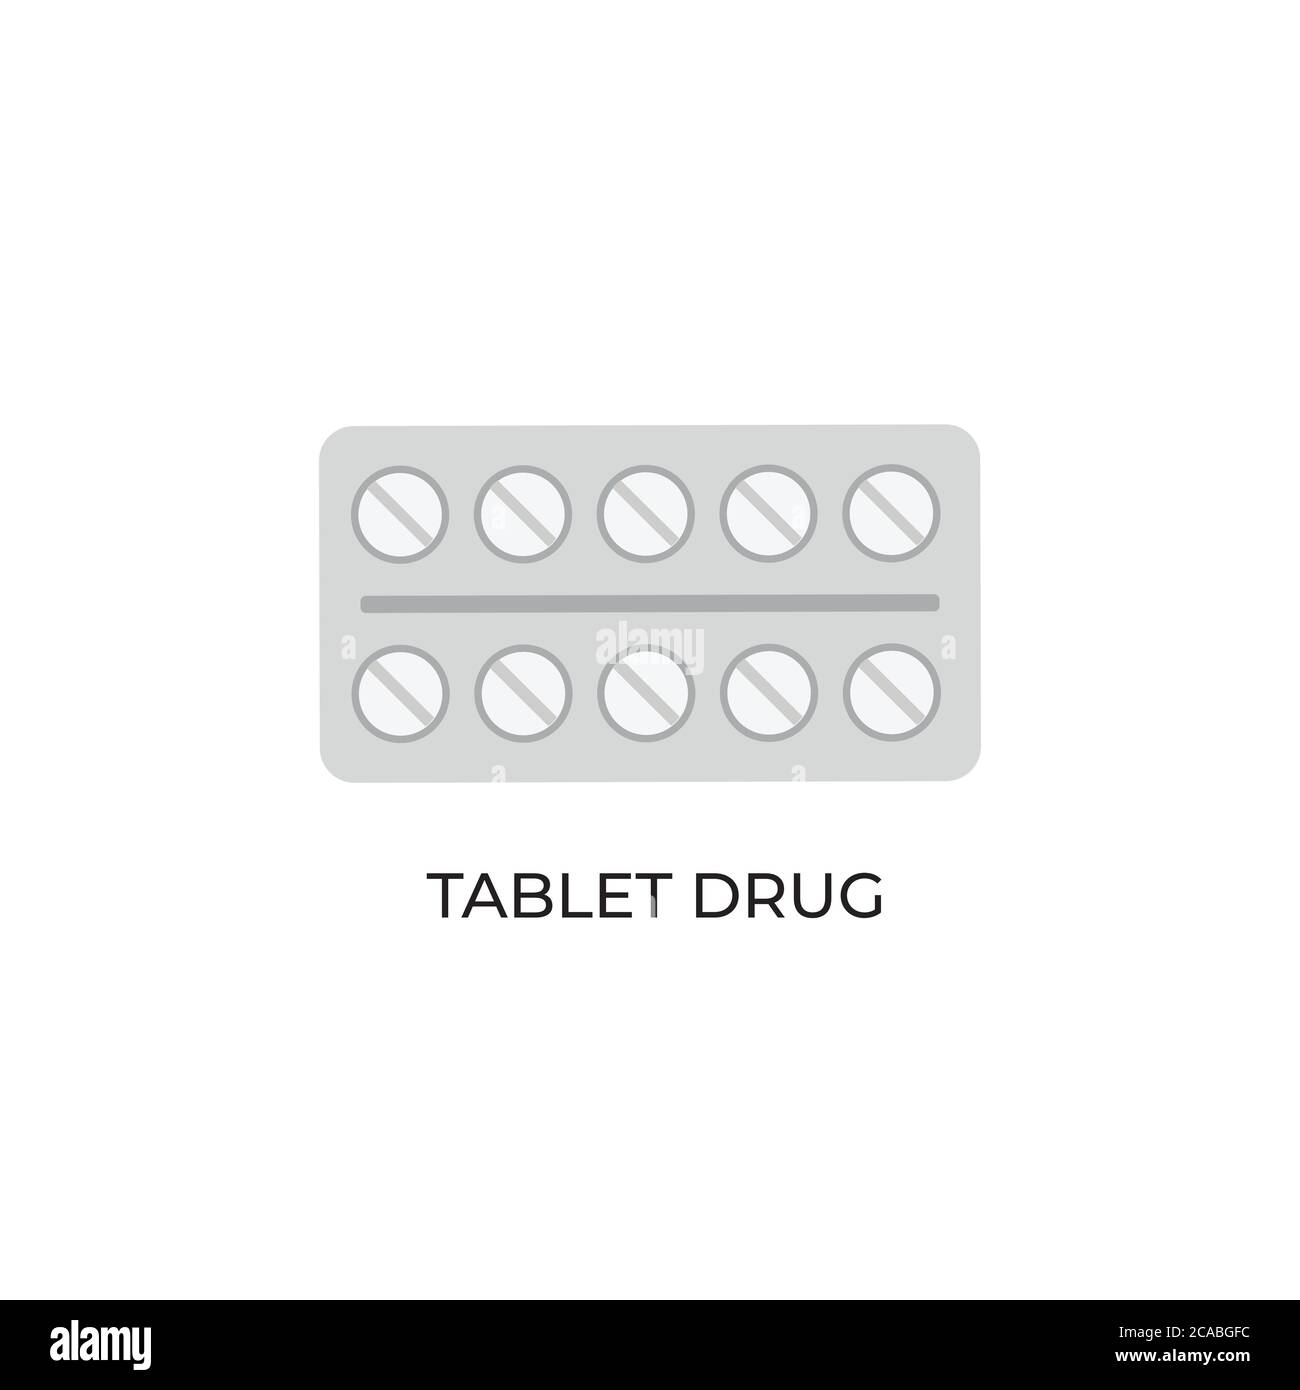 Icona vettore di droga, disegno piatto illustrazione della confezione della compressa, imballaggio medico di farmacia per farmaci, antibiotici, vitamine o compresse di aspirina. Illustrazione Vettoriale